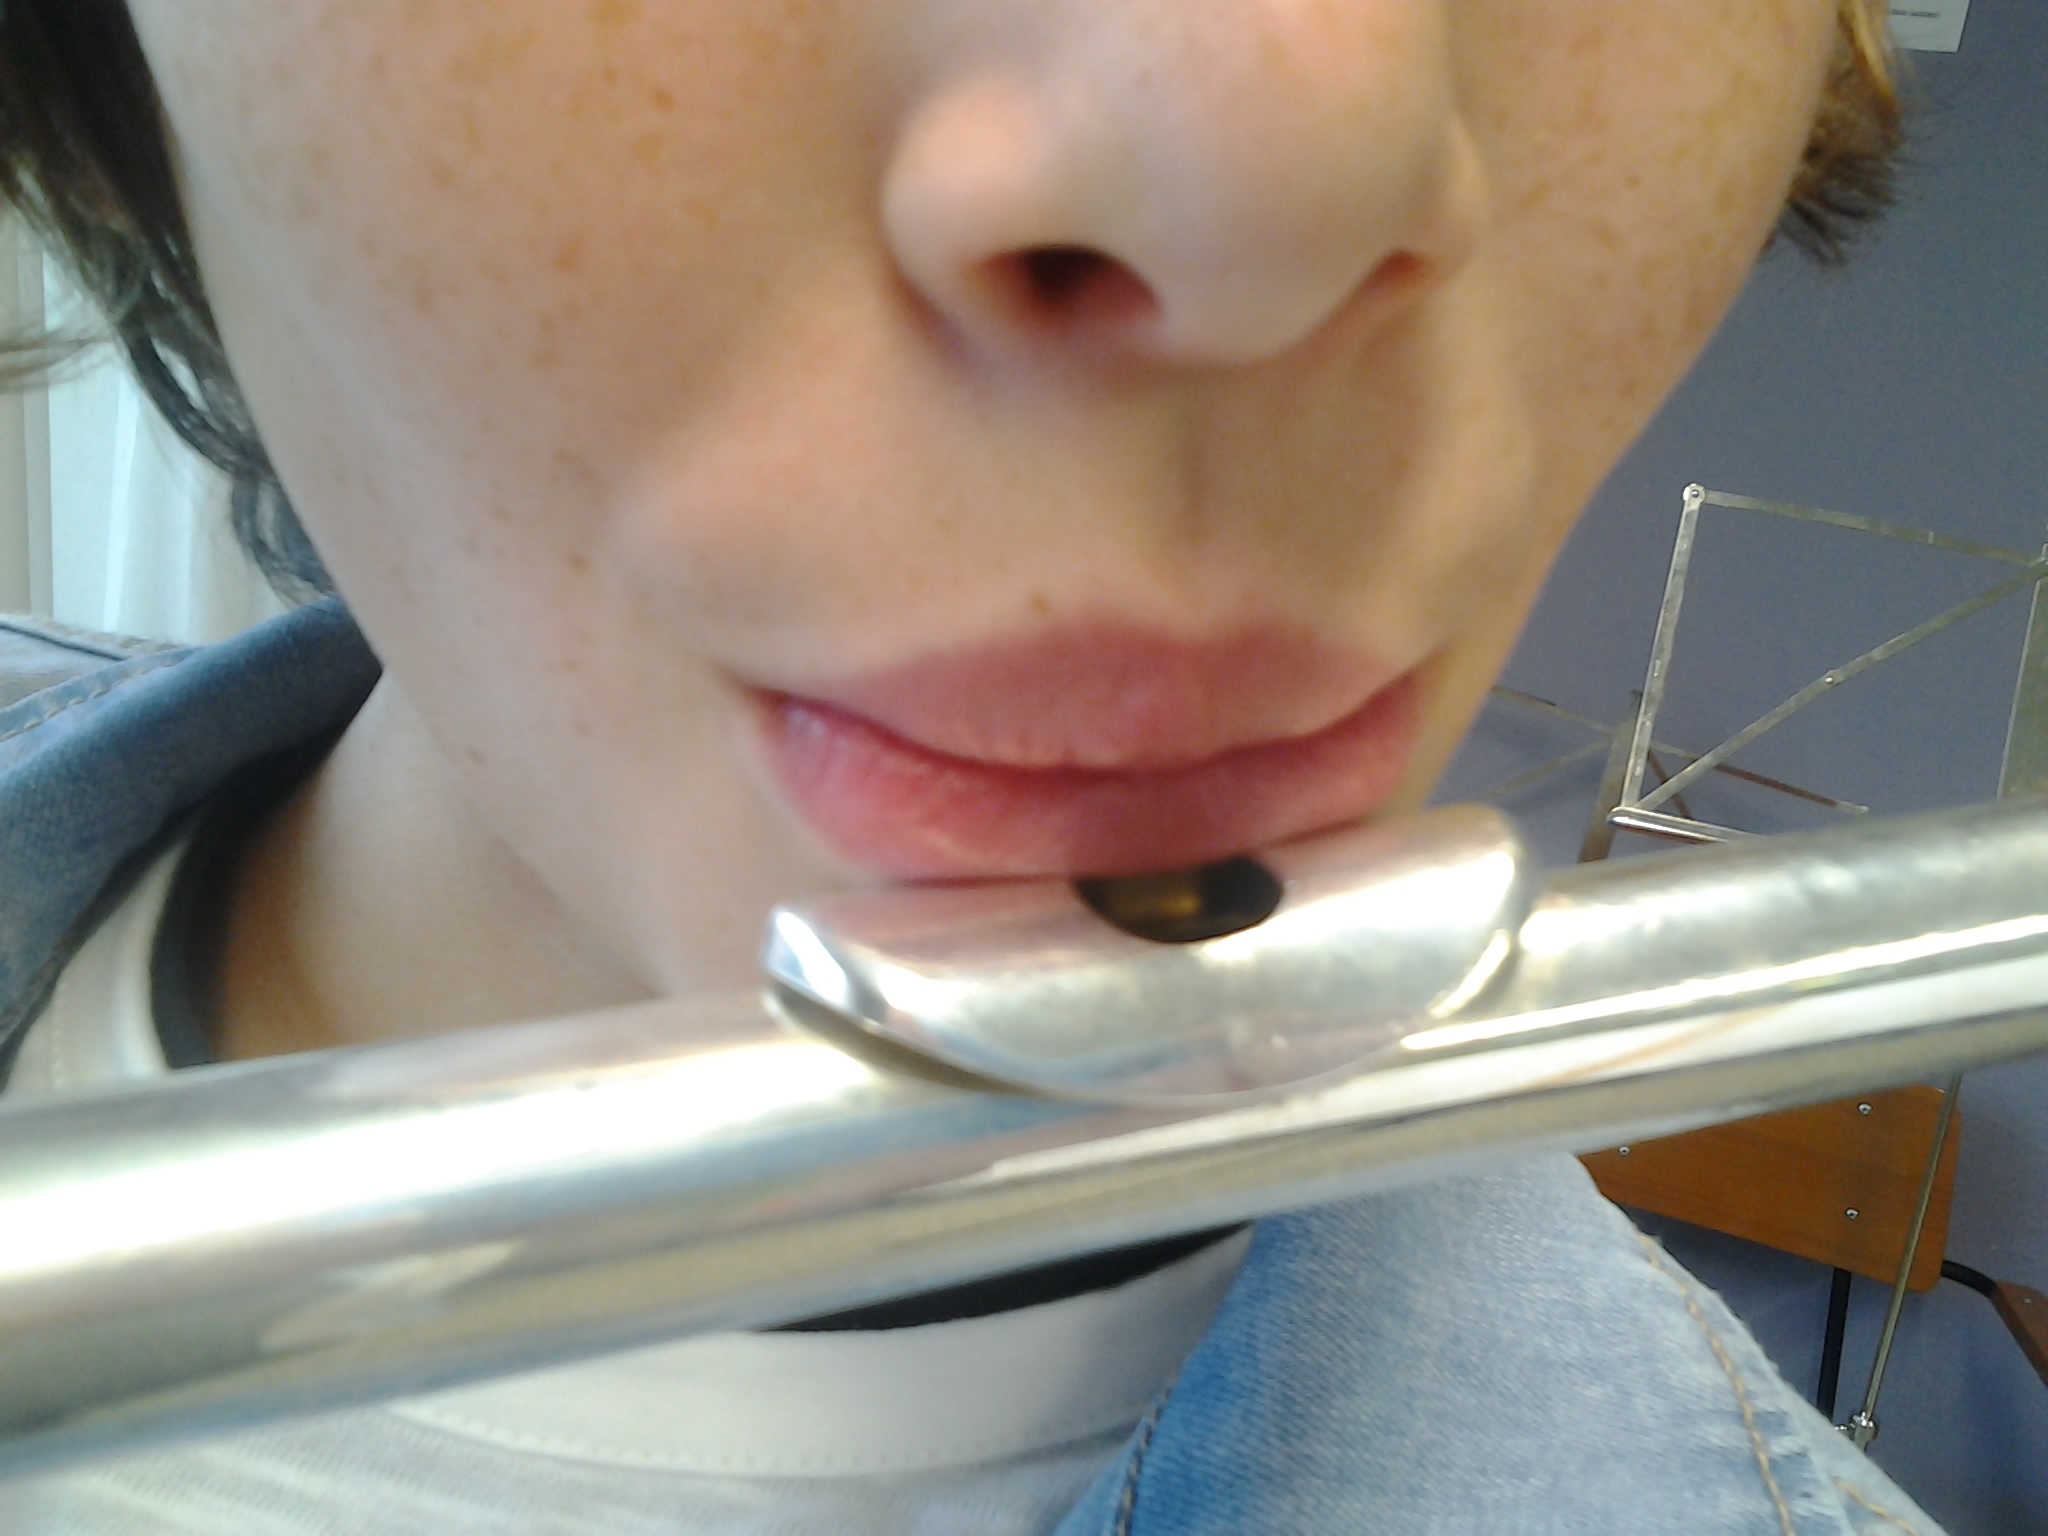 Embocadura de la flauta travesera y colocación de los labios